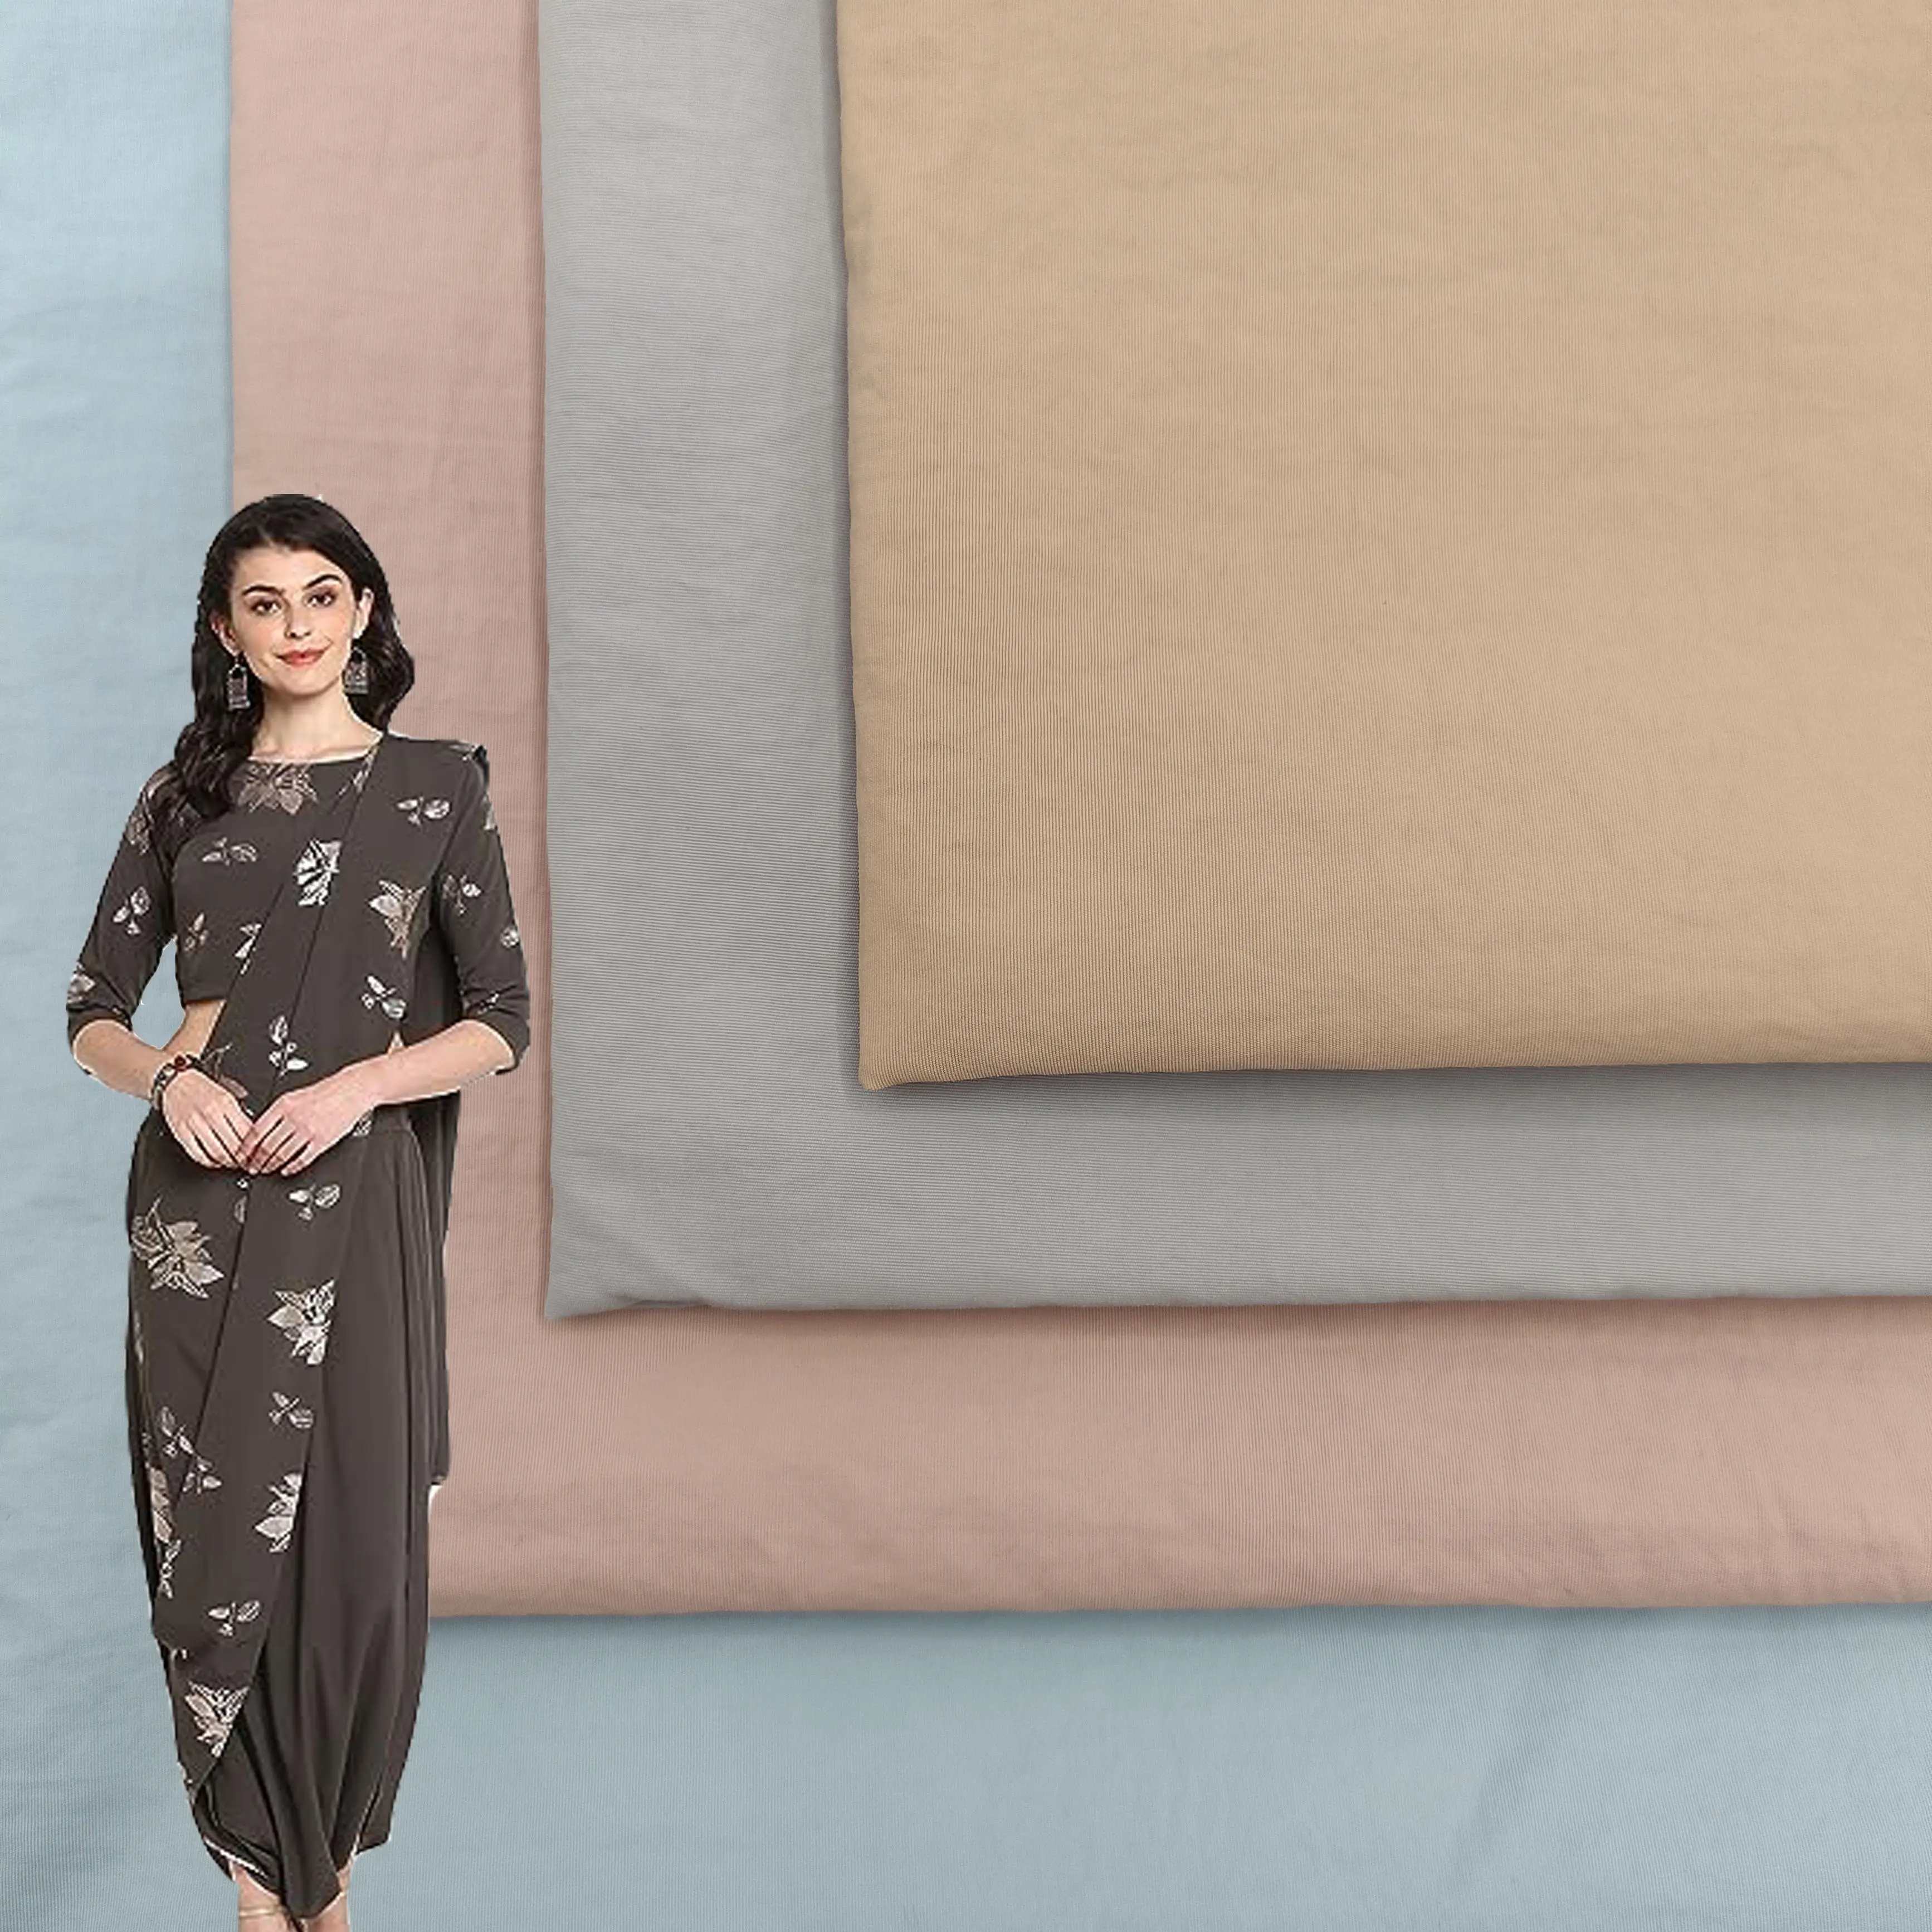 100% polyester tissu léger respirant polyester tissé crêpe tissu pour vêtements pour femmes